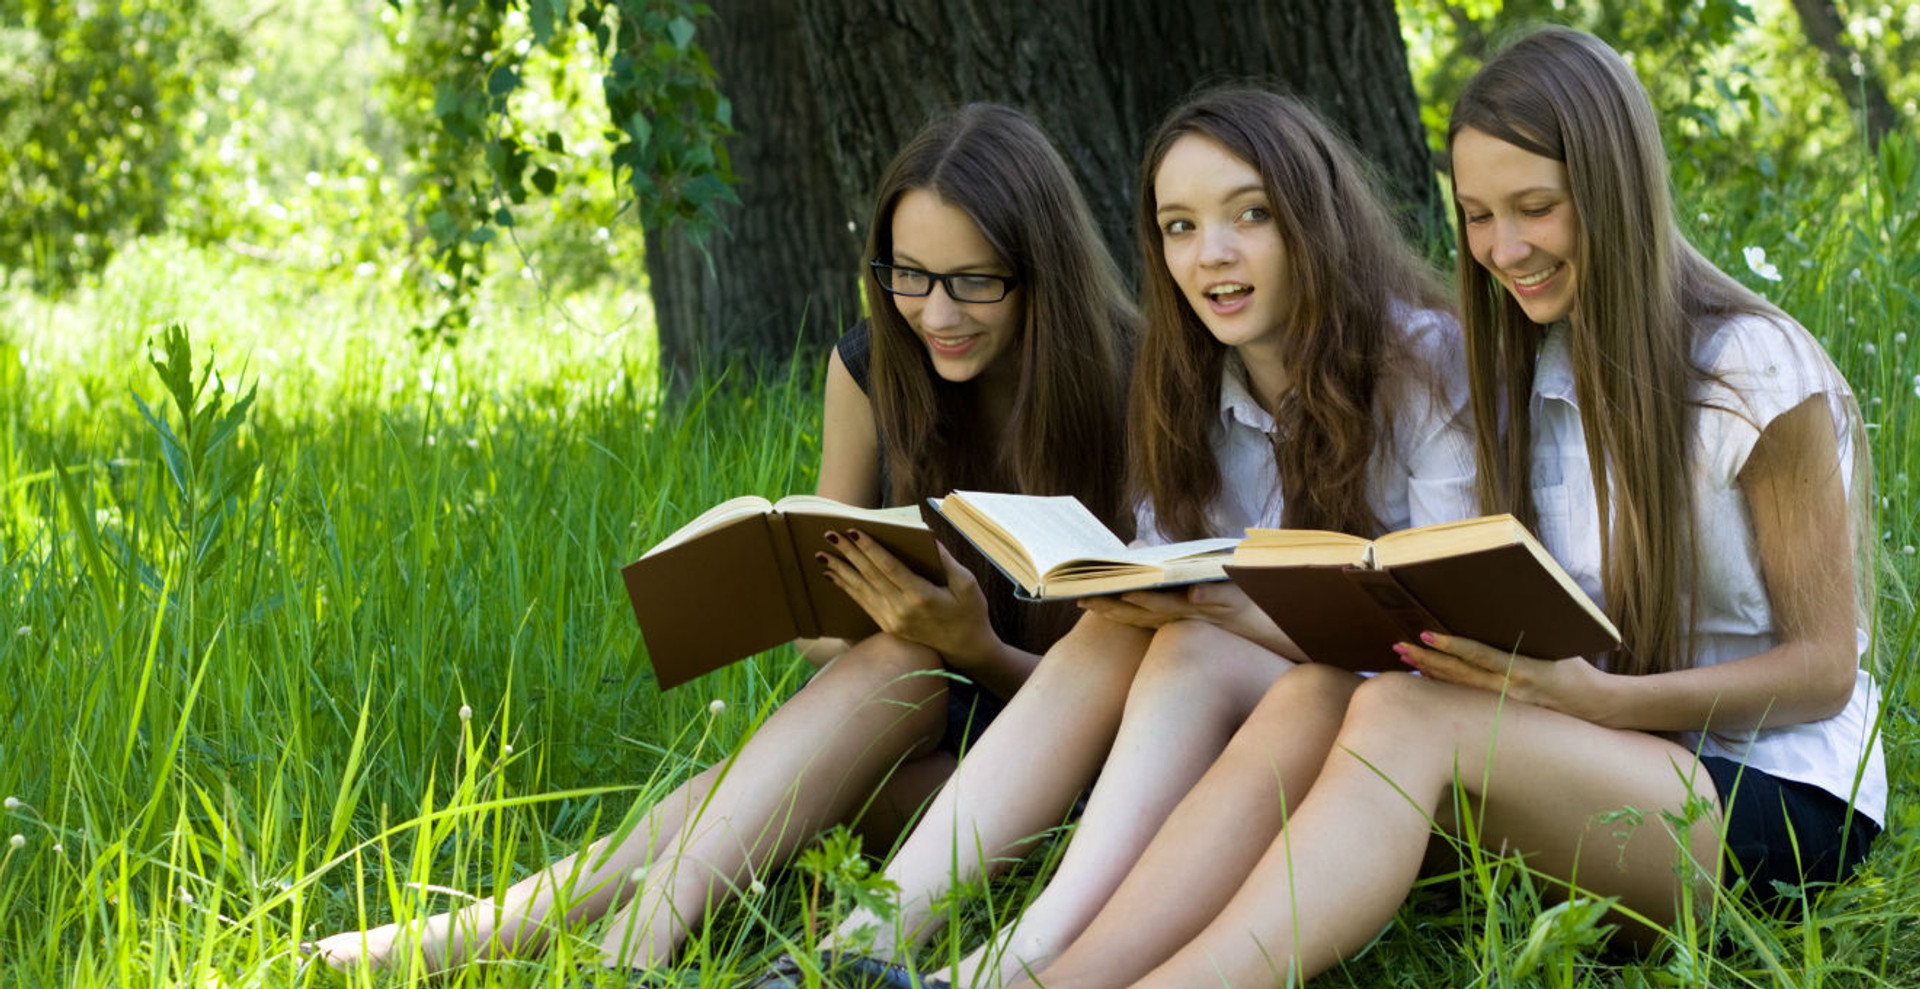 Майже доросла література. 9 цьогорічних книжок для підлітків